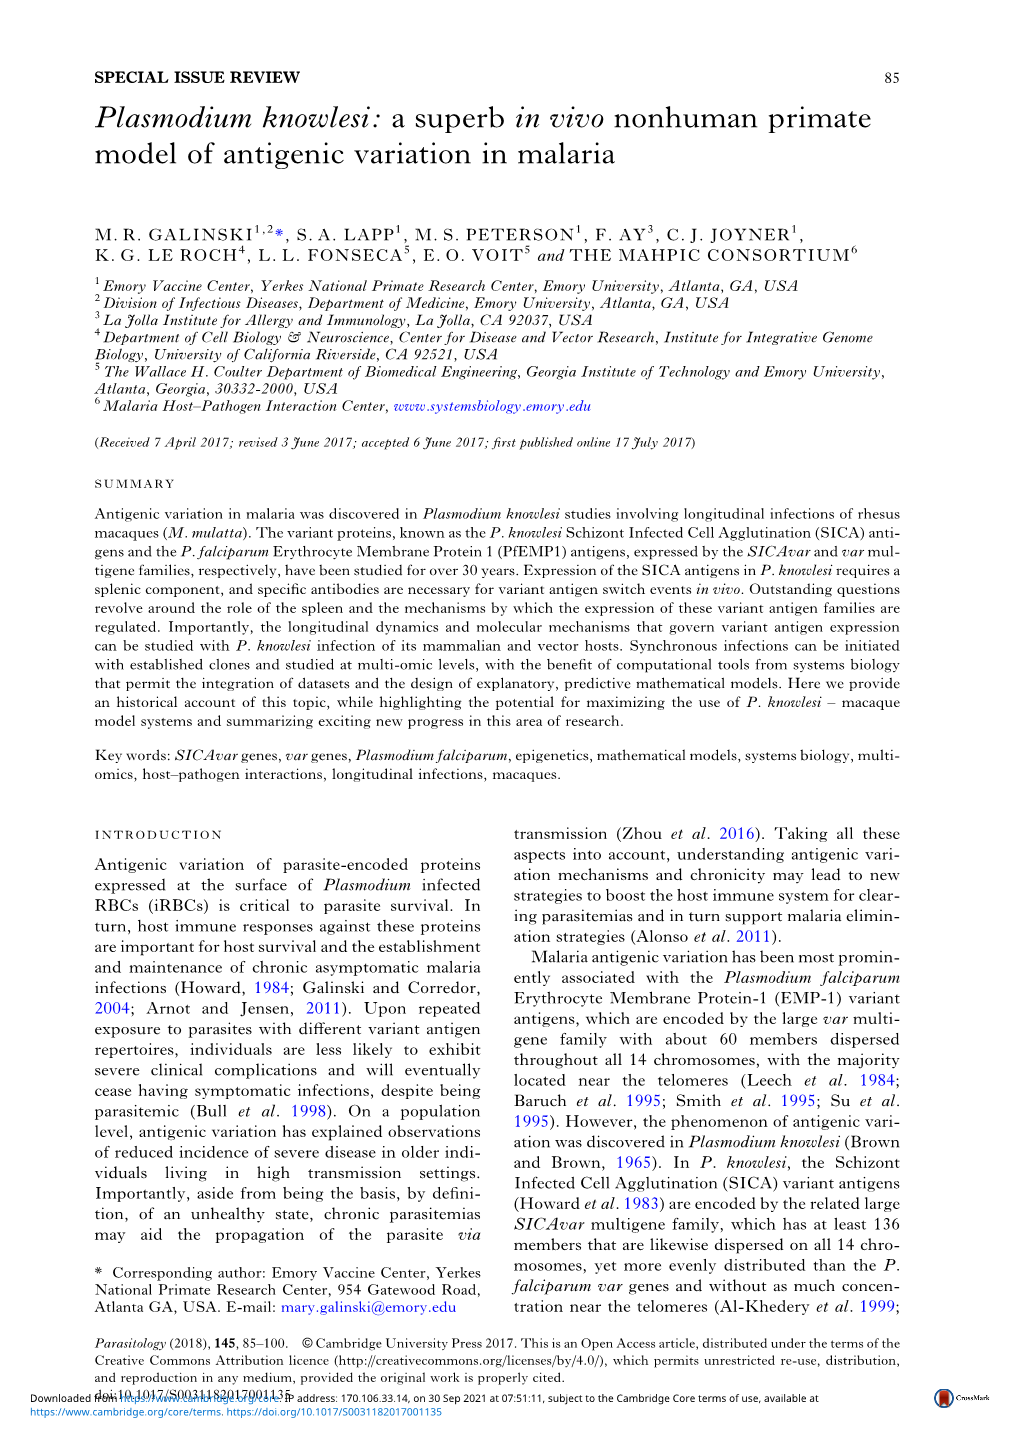 Plasmodium Knowlesi: a Superb in Vivo Nonhuman Primate Model of Antigenic Variation in Malaria